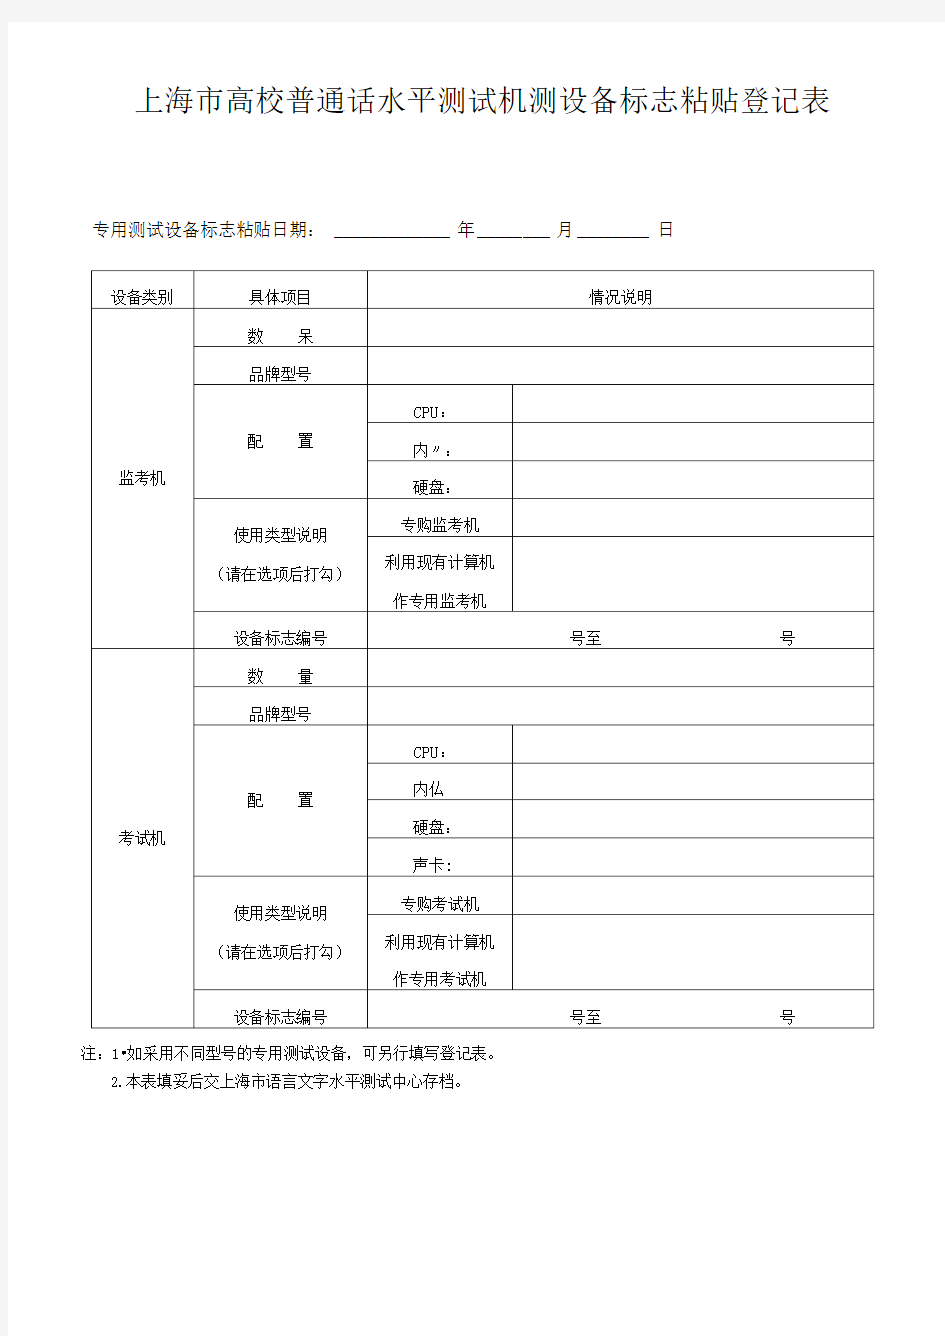 上海市高校普通话水平测试机测设备标志粘贴登记表